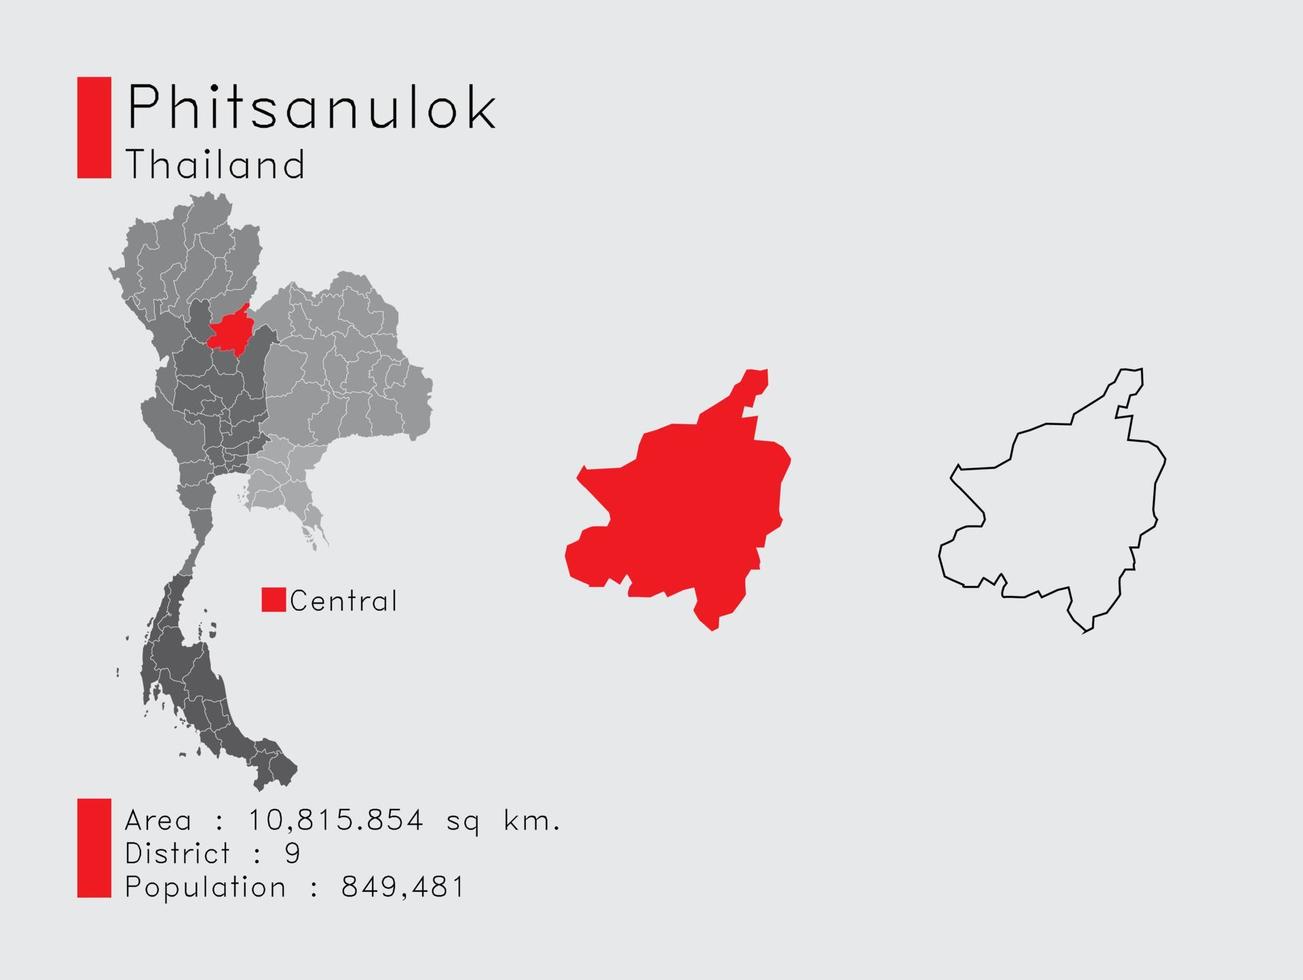 phitsanulok position in thailand eine reihe von infografikelementen für die provinz. und Bereich Bezirk Bevölkerung und Gliederung. Vektor mit grauem Hintergrund.